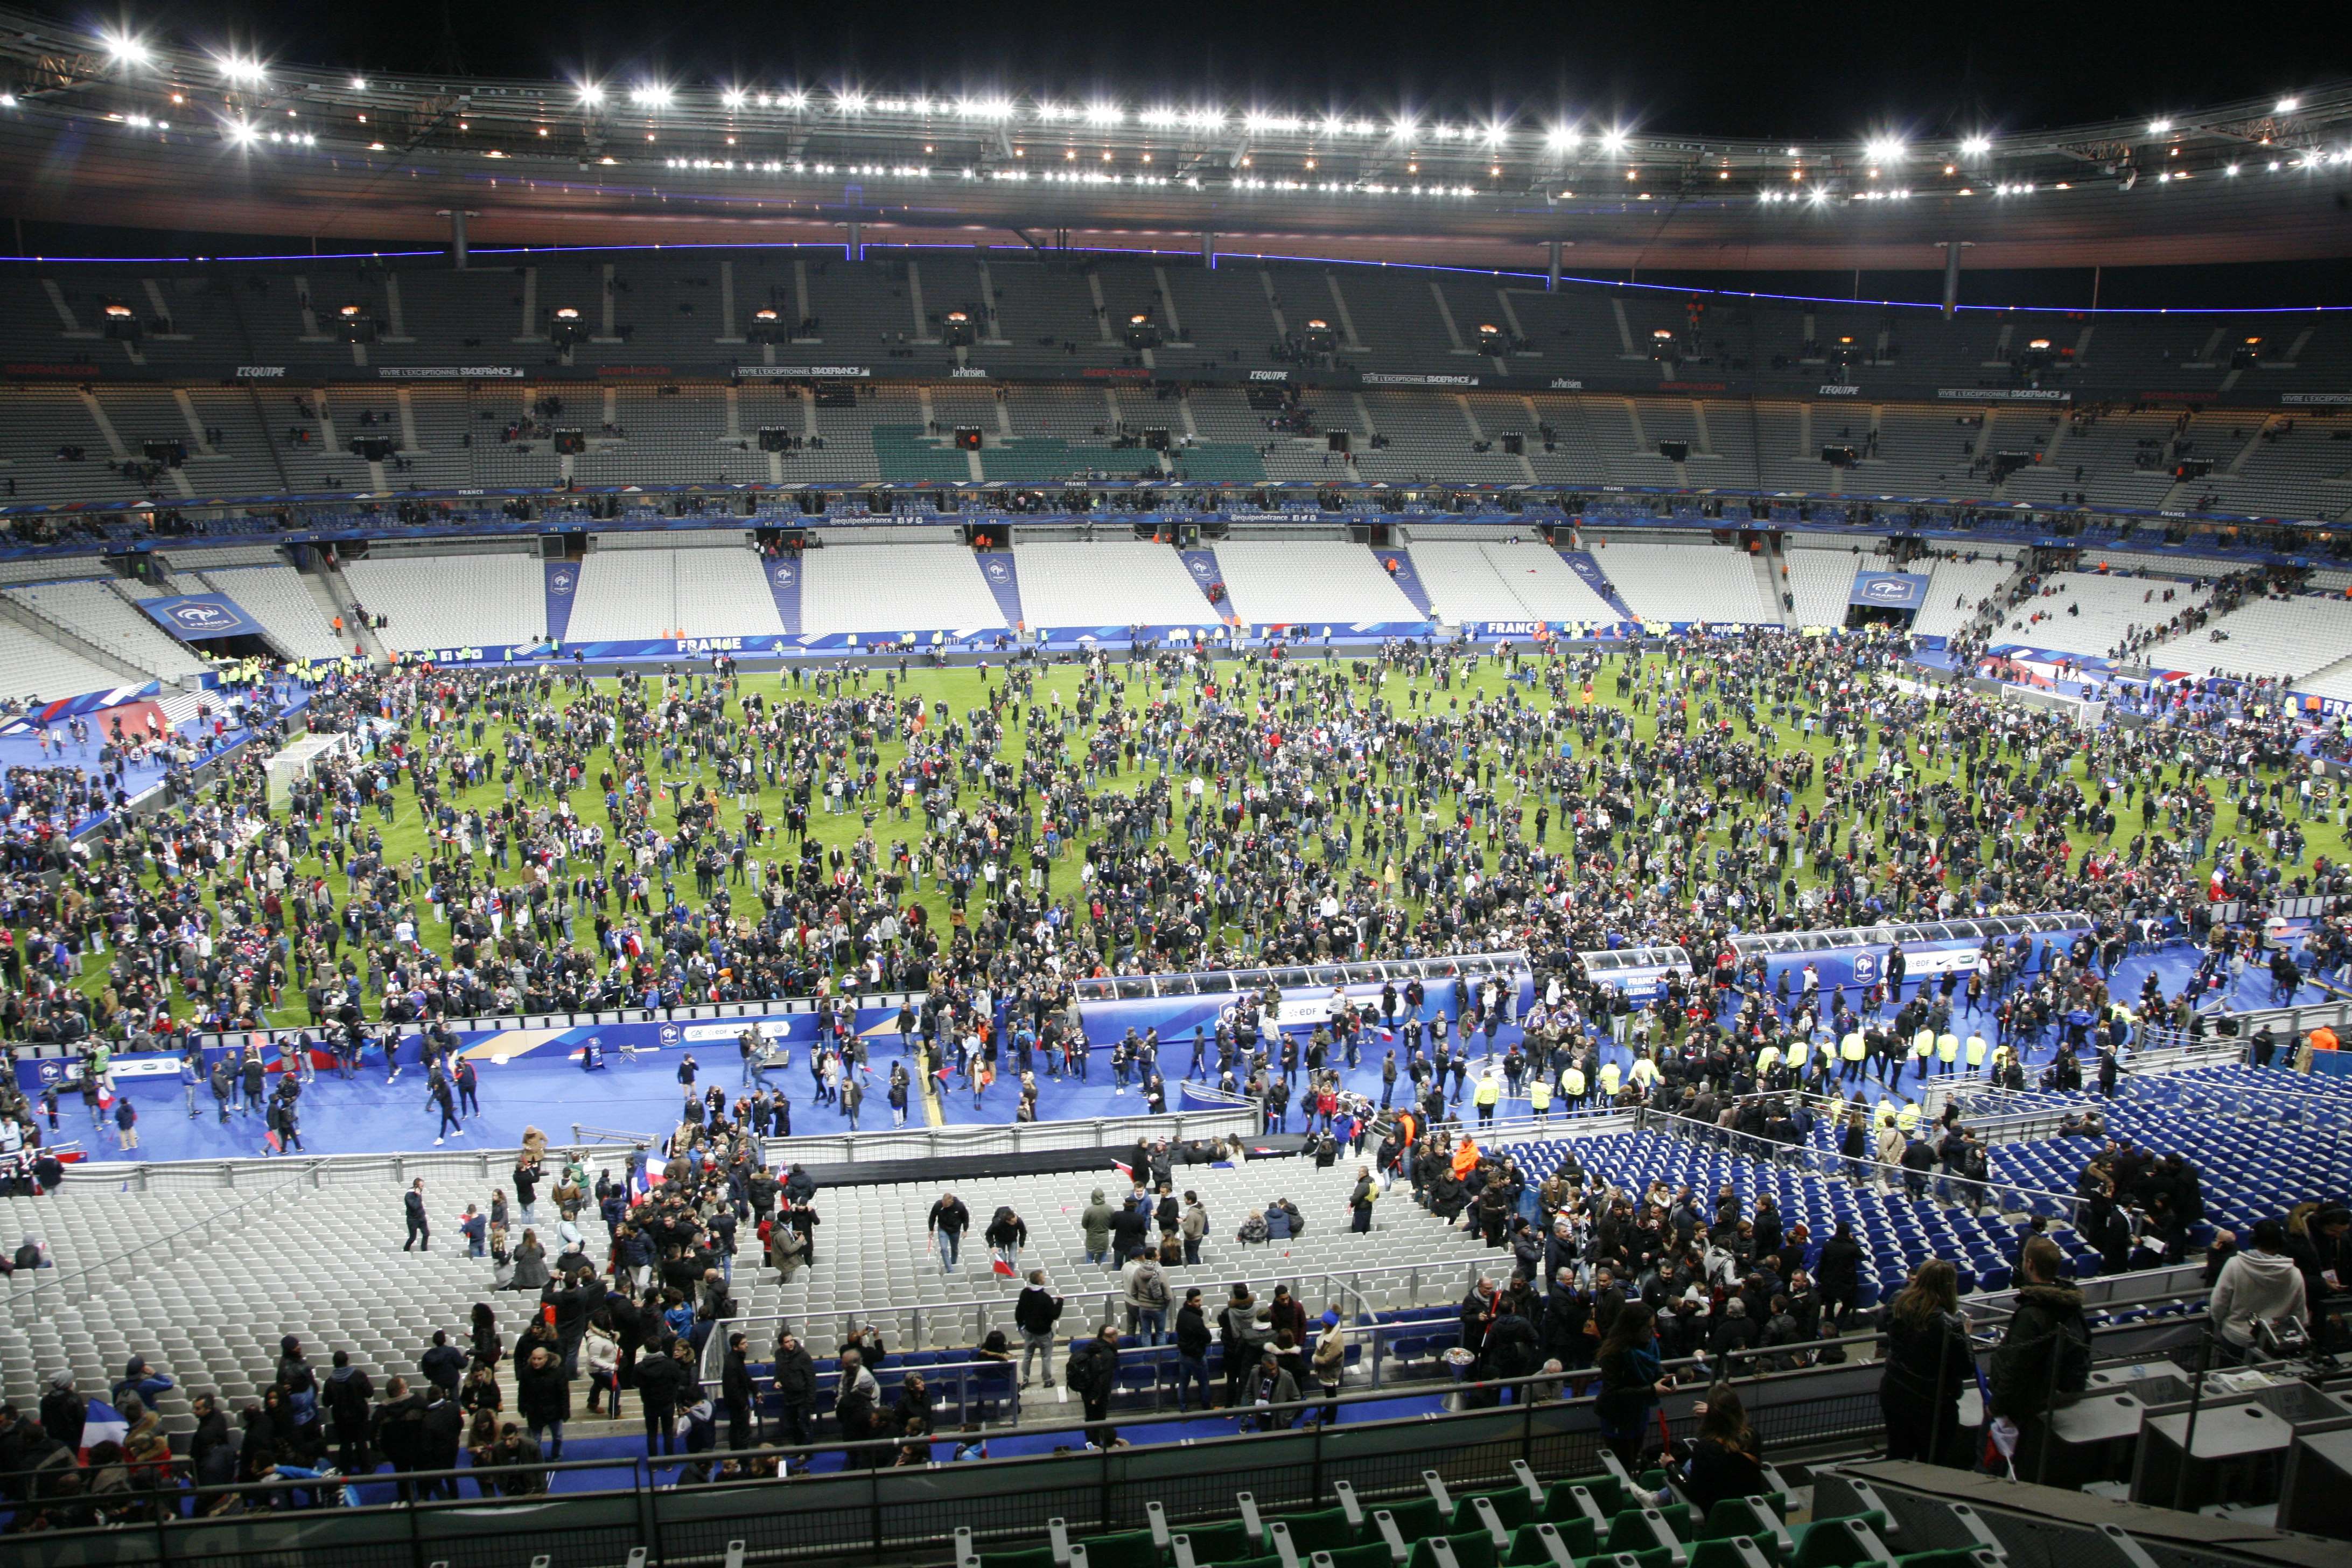 فرنسا تعلن تعليق كافة الأنشطة الرياضية في باريس حتى نهاية الأسبوع